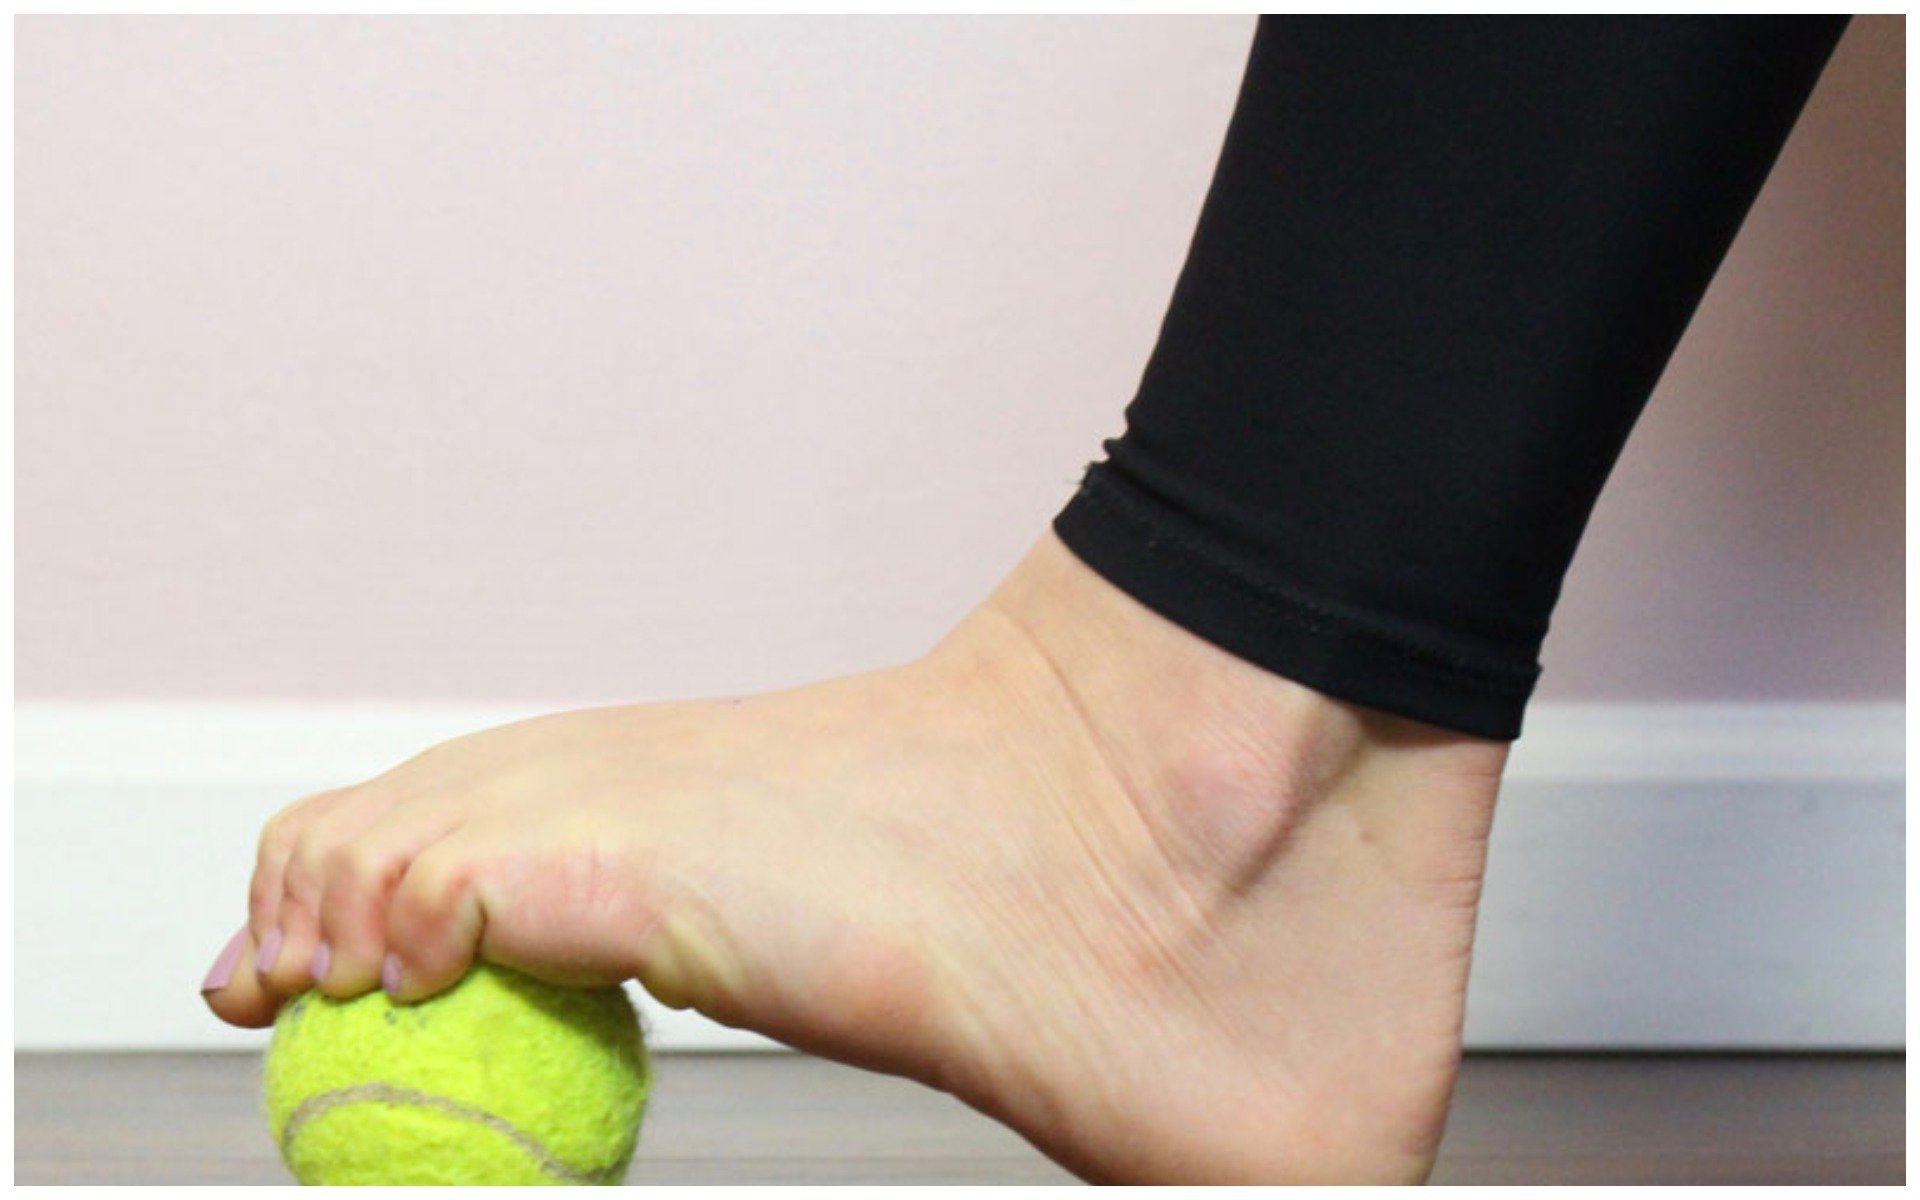 Упражнения для пальцев стопы. МФР стопы с мячом. Упражнения с мячиком для стопы. Упражнения для стопы с мячиком теннисным. Теннисный мячик занятие для ног.